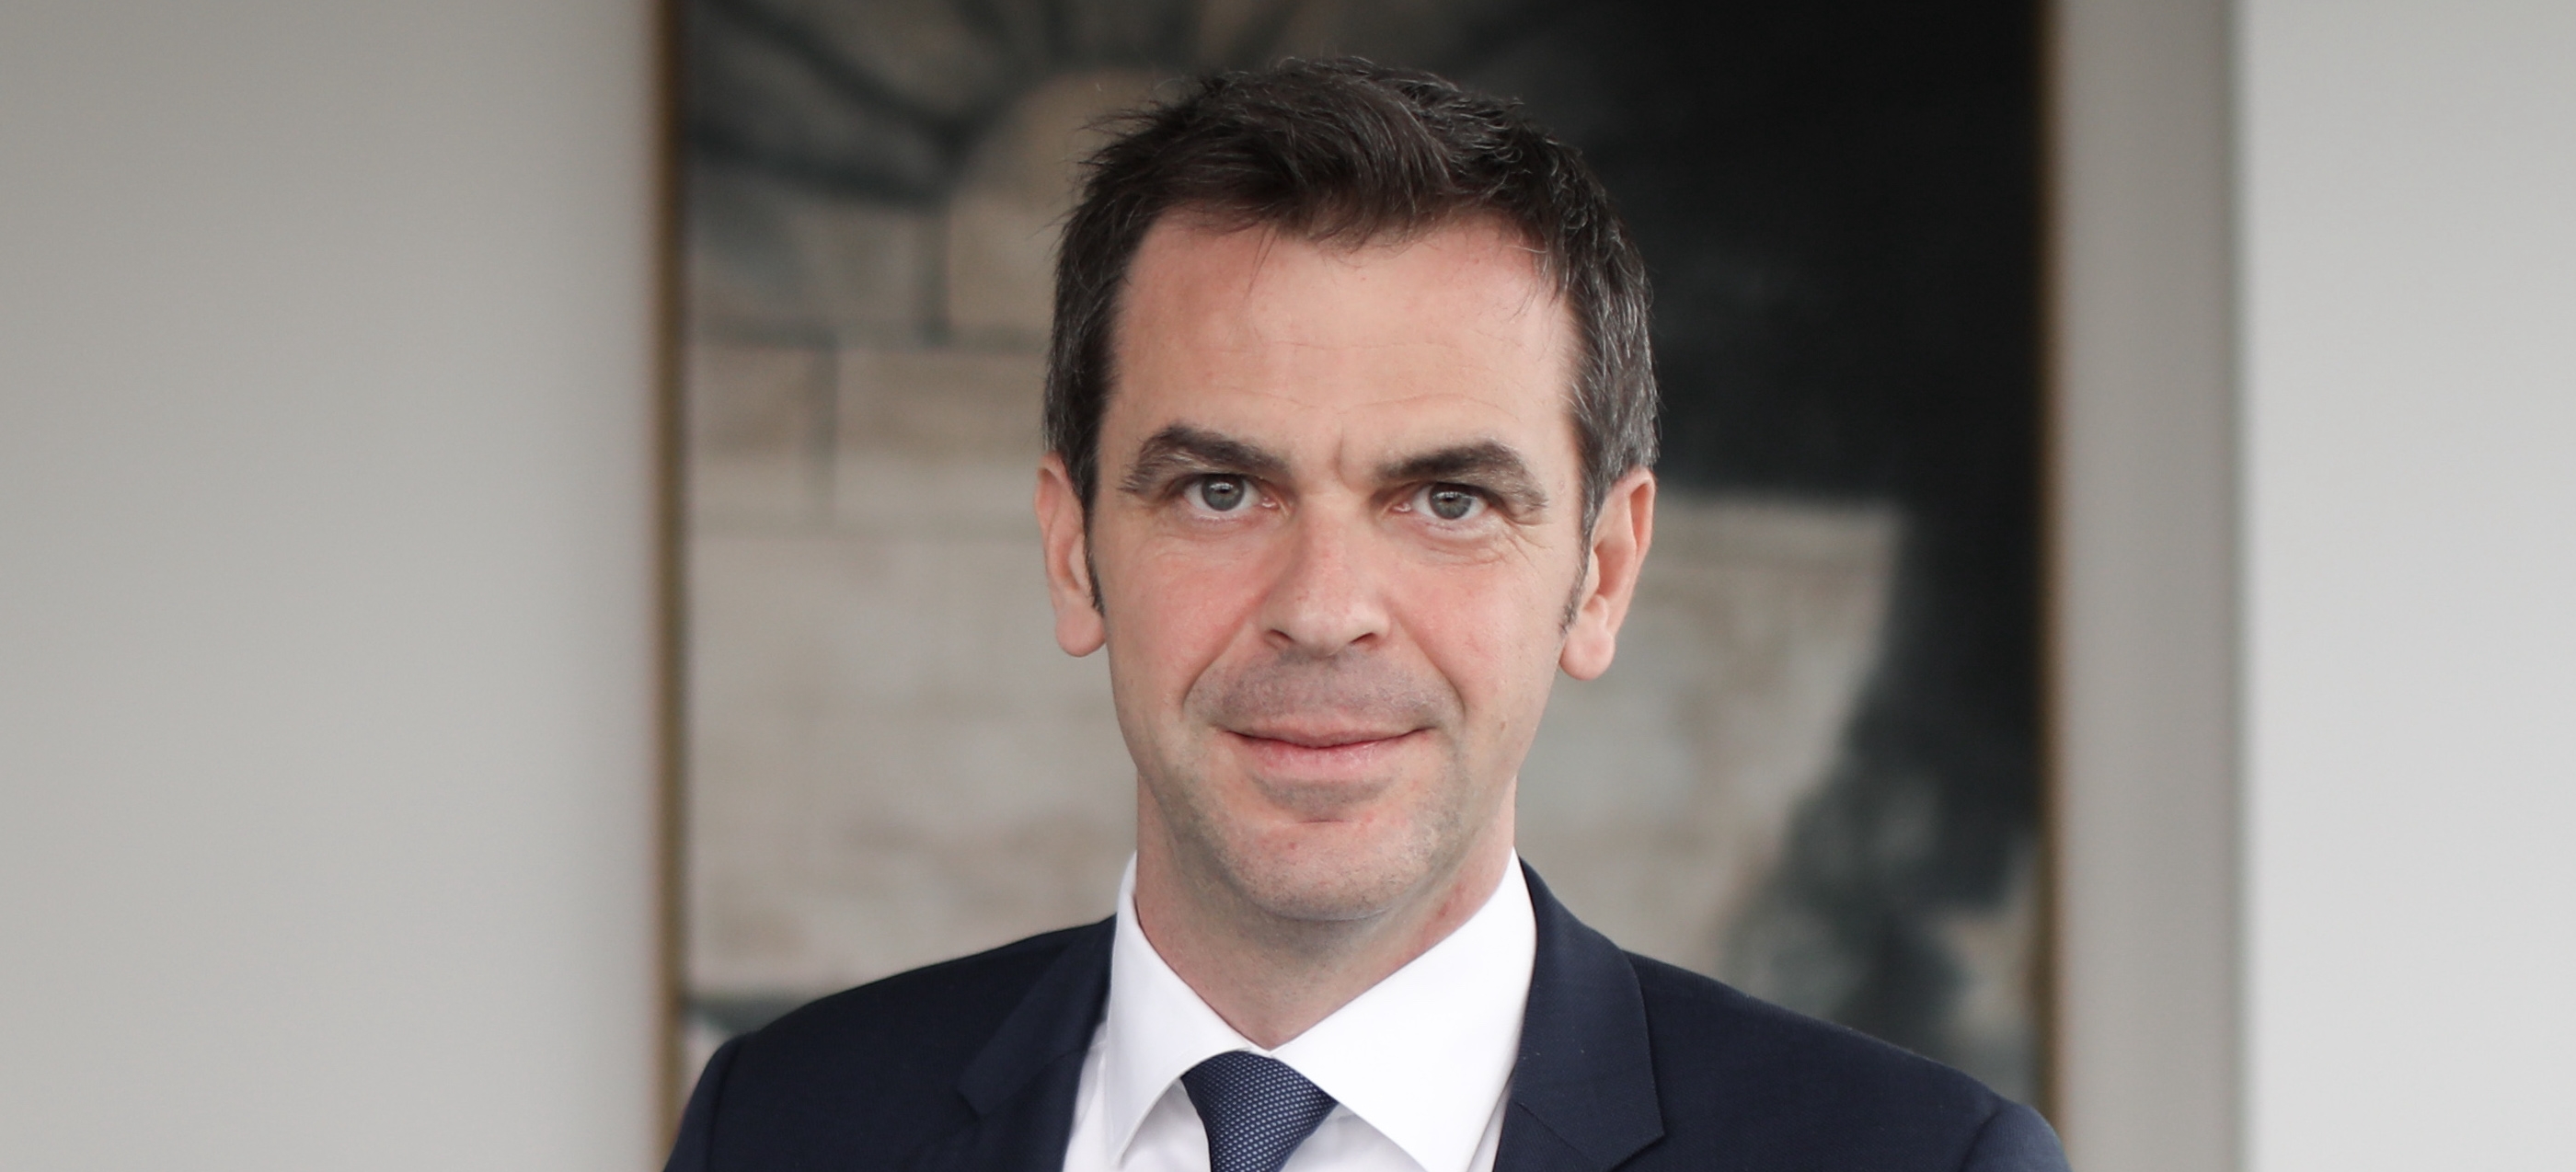 ministre de la santé 2020 France Olivier véran